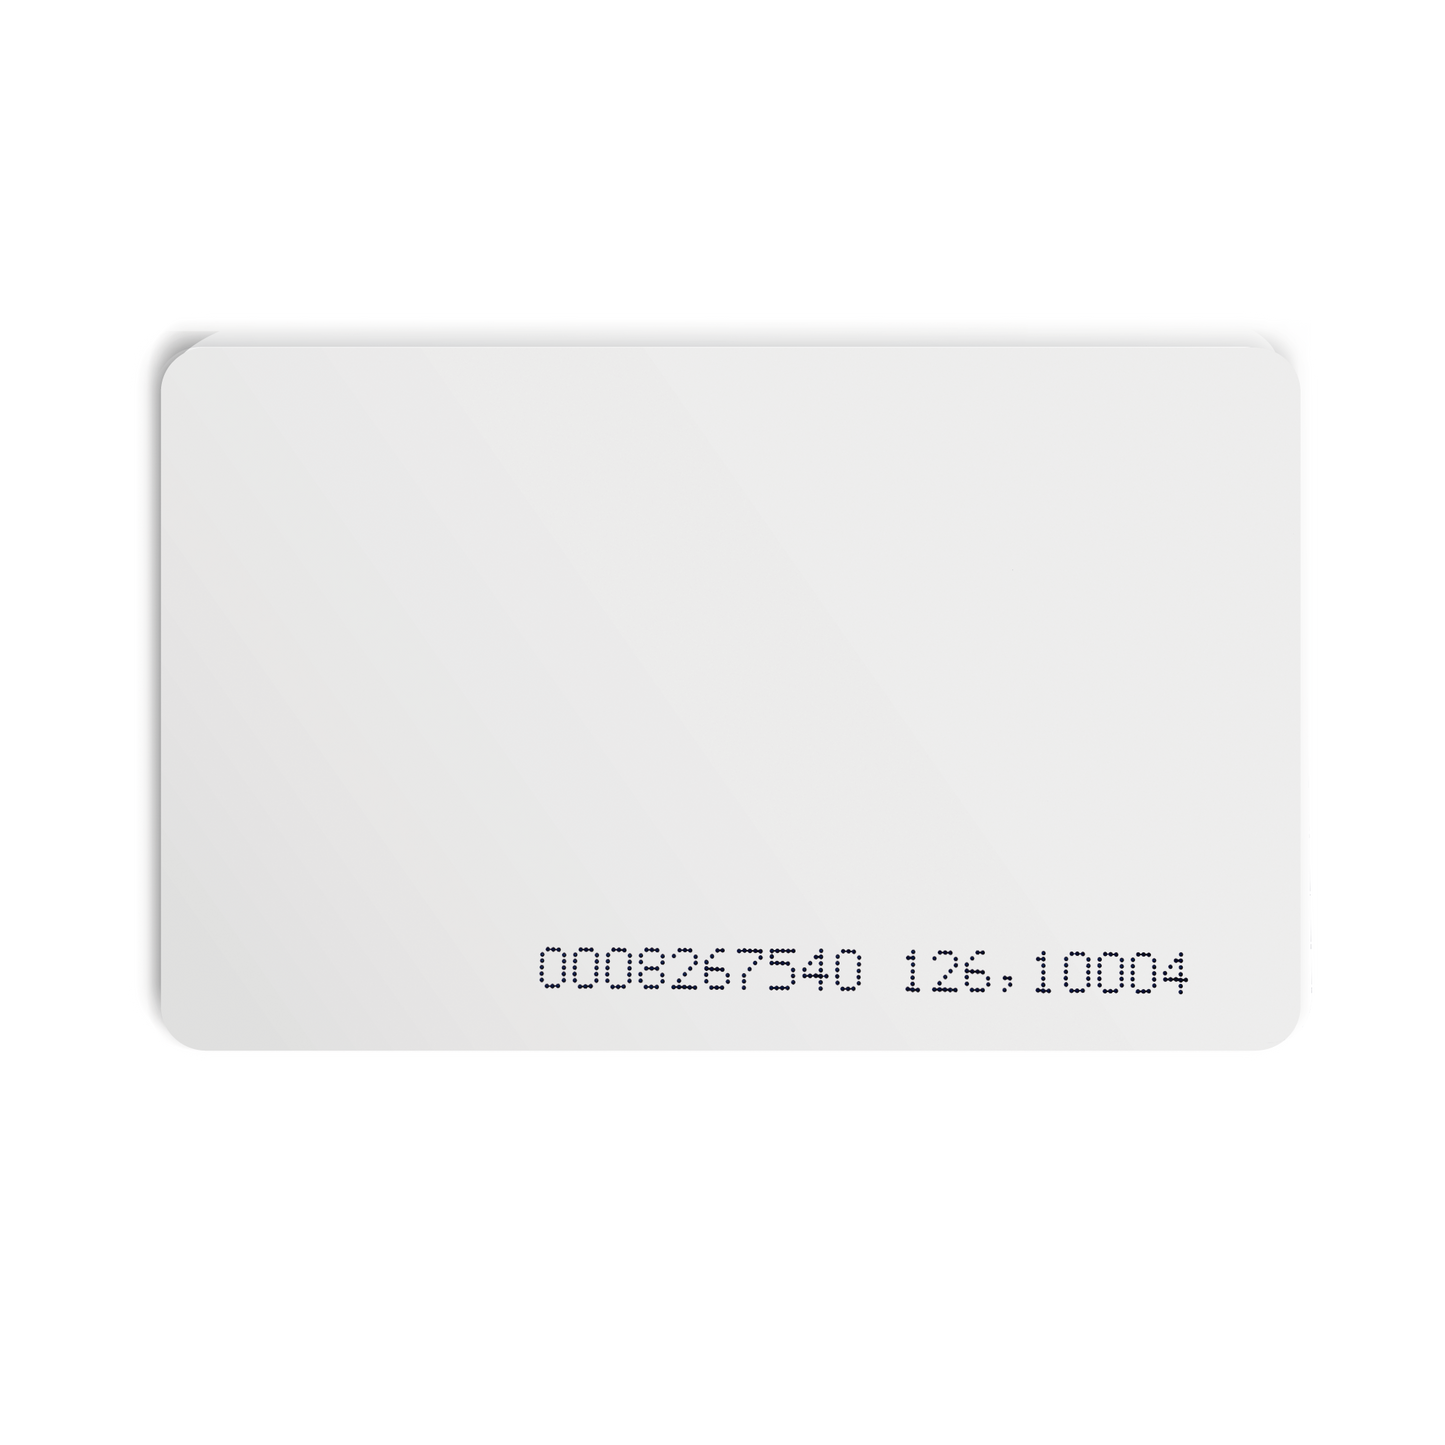 Tarjeta RFID para lectora con conector 1Wire